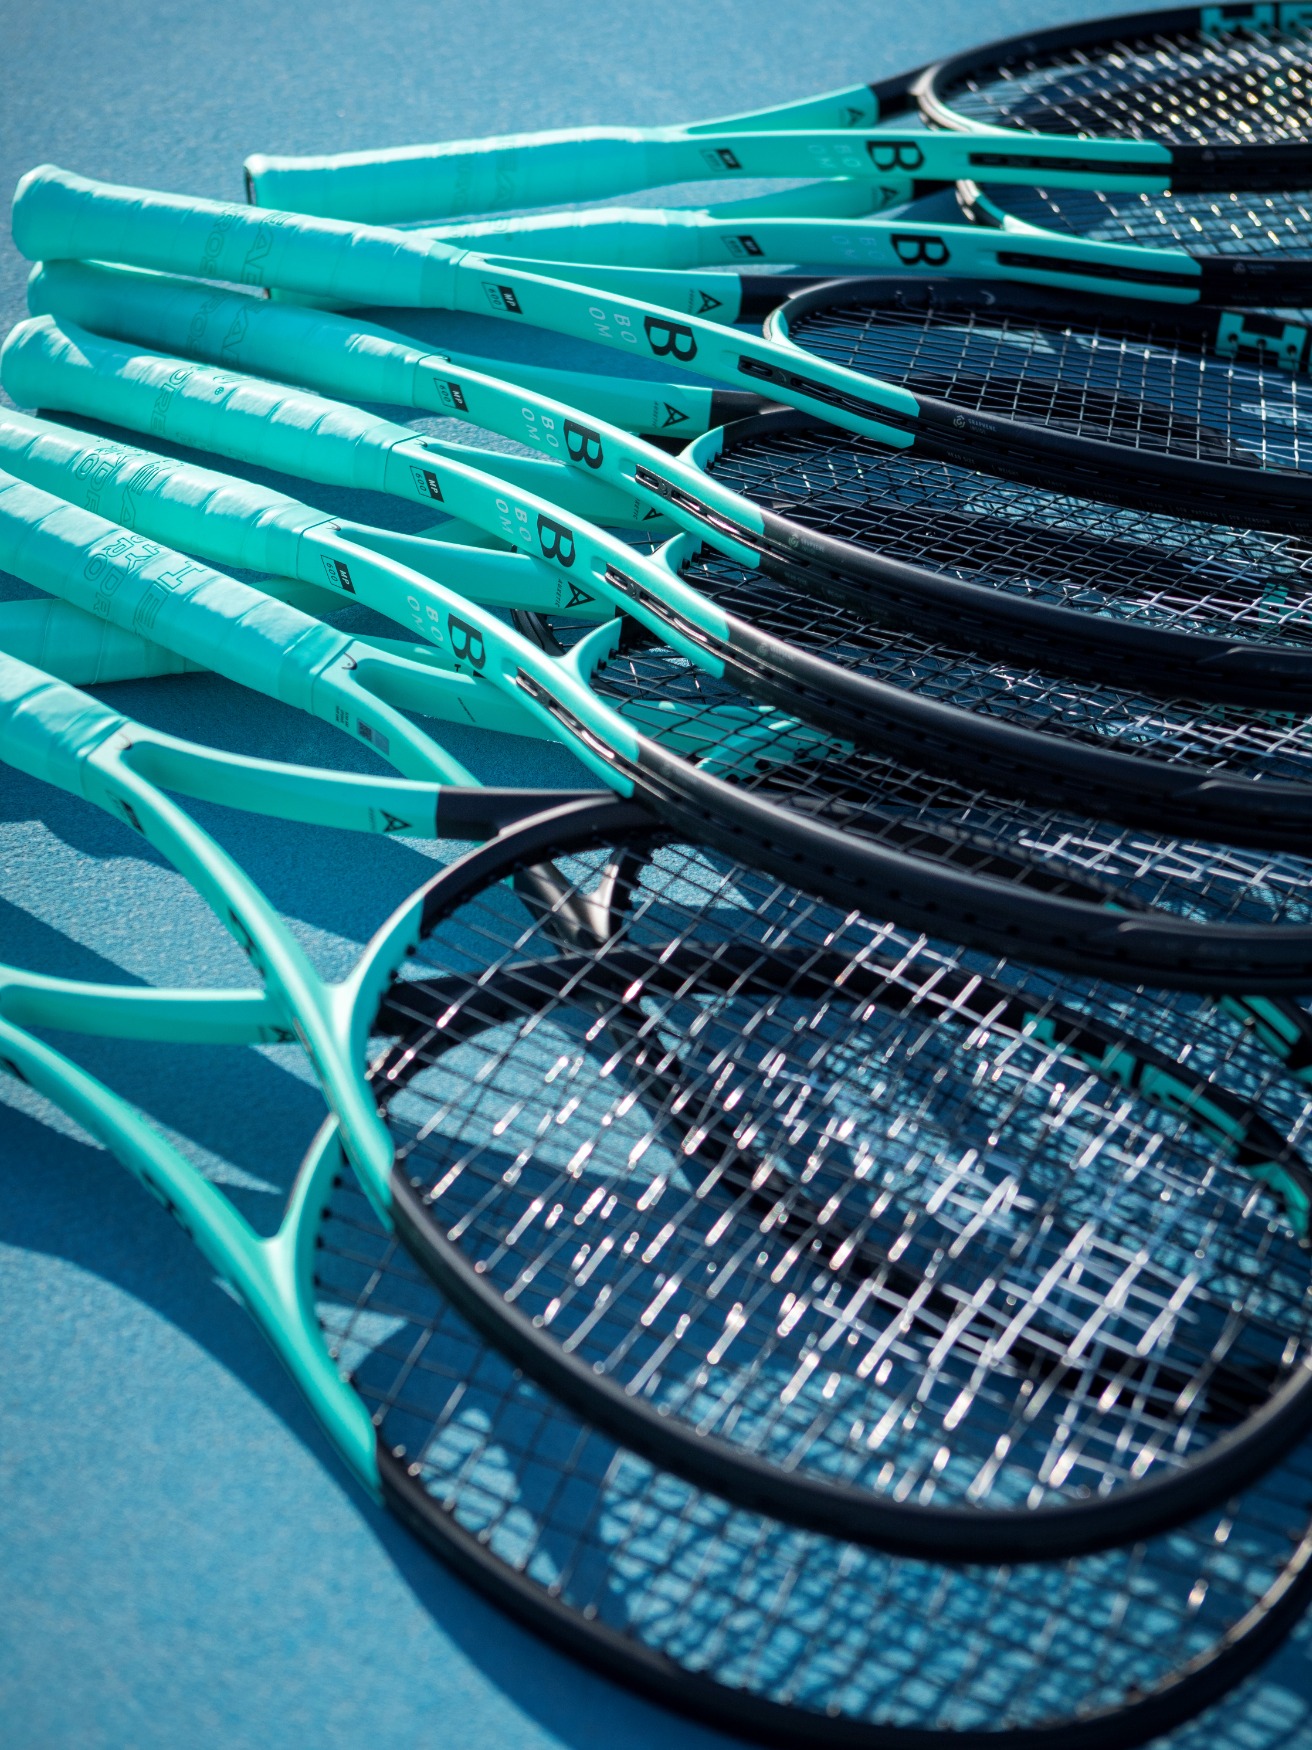 Welk tennisracket past mij? | Plutosport